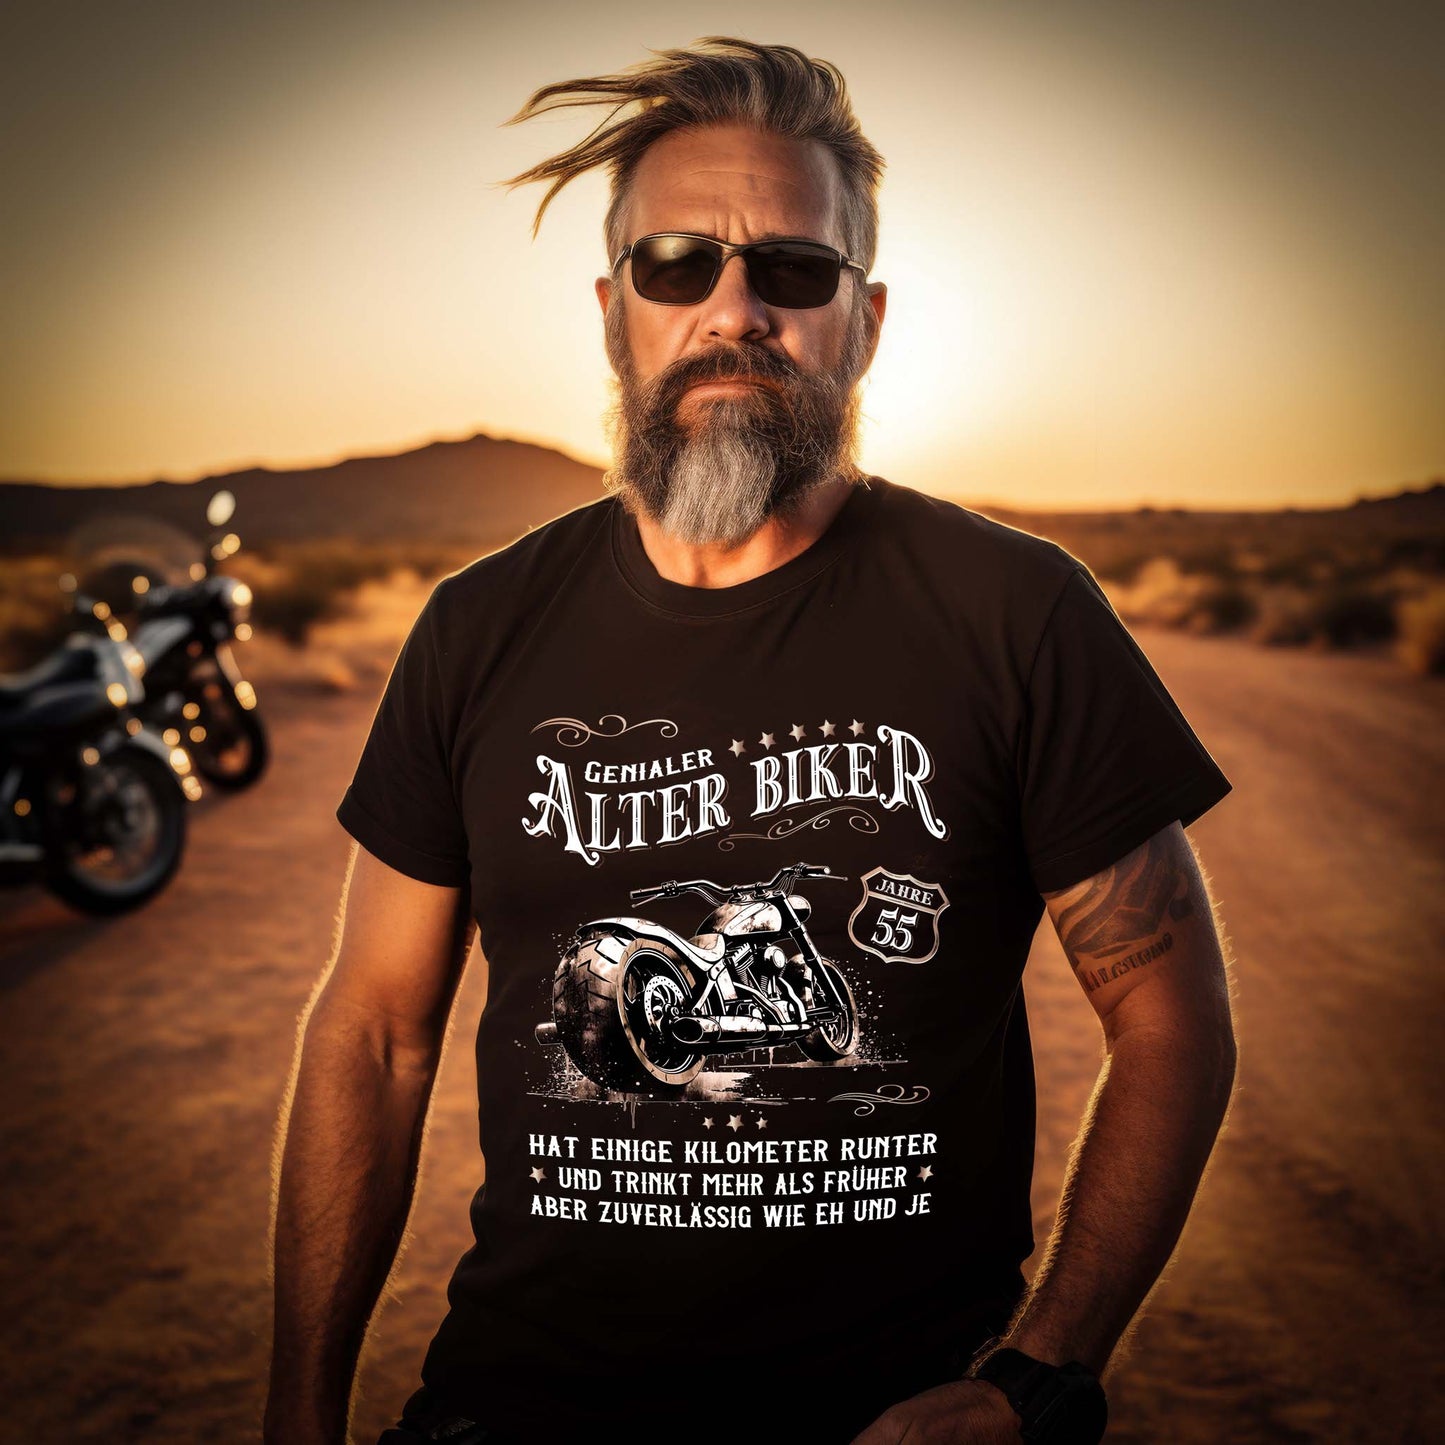 Ein Biker mit einem Geburtstags- T-Shirt für Motorradfahrer von Wingbikers mit dem Aufdruck, Alter Biker - 55 Jahre - Einige Kilometer runter, trinkt mehr - aber zuverlässig wie eh und je - in schwarz.